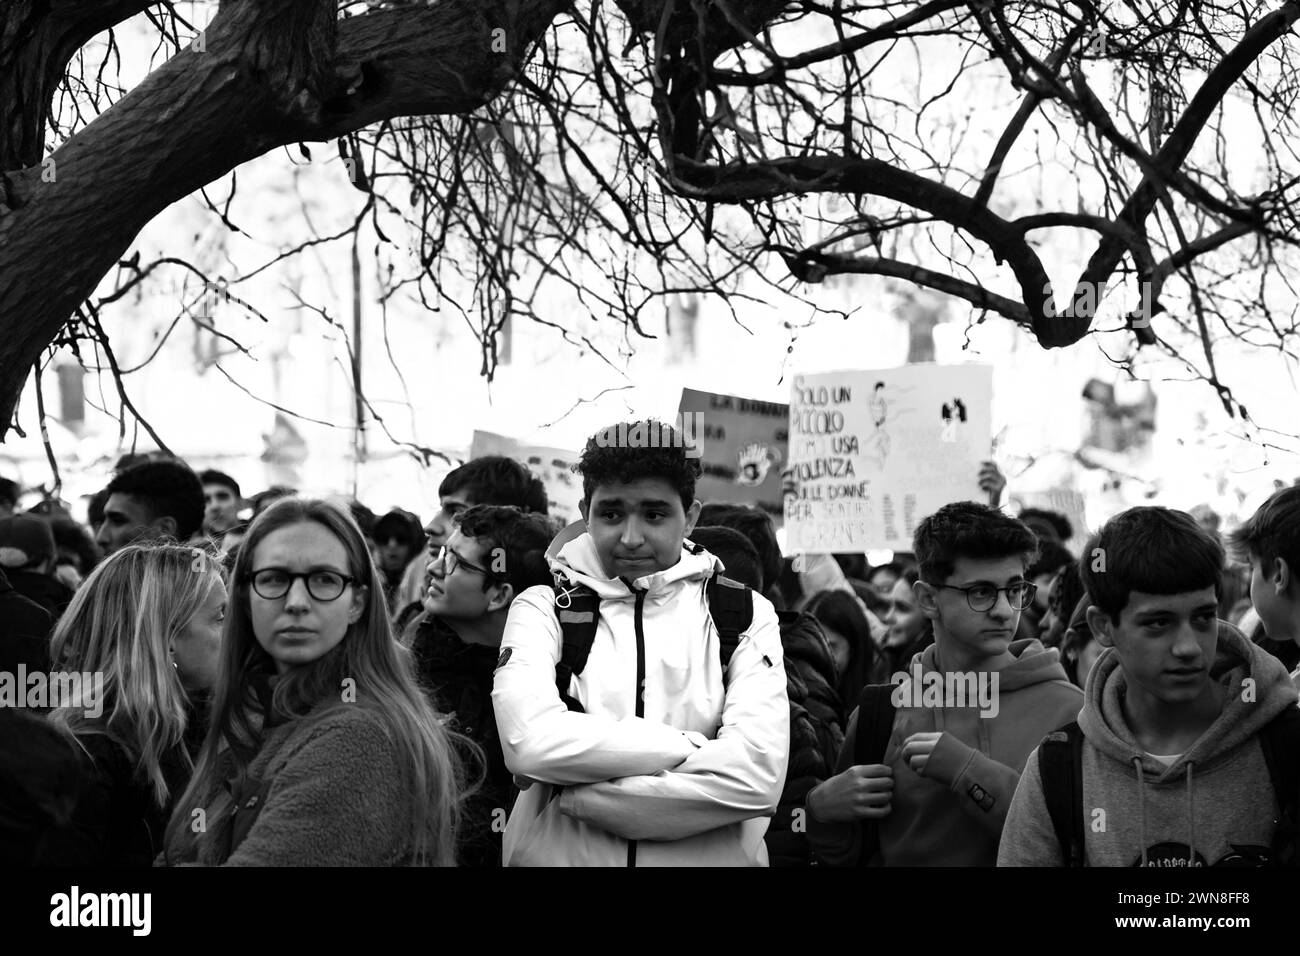 Studentendemonstration in Parma Italien, das Foto wurde in Parma am 25/2023 während einer Demonstration zum Protest gegen geschlechtsspezifische Gewalt aufgenommen Stockfoto